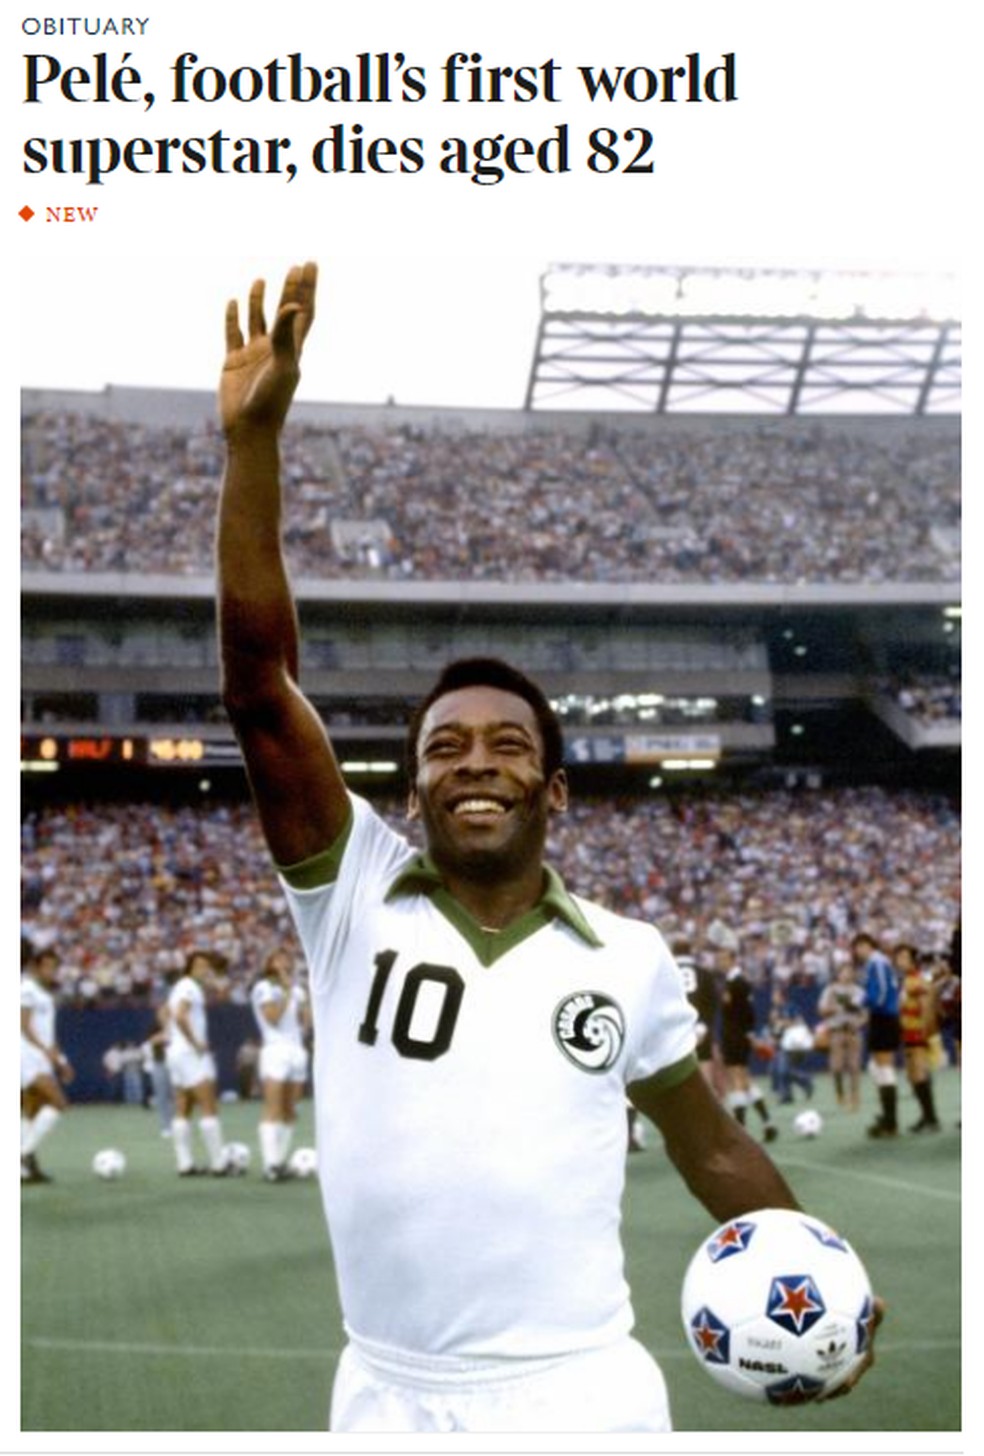 Capa do The Times para morte de Pelé — Foto: Reprodução